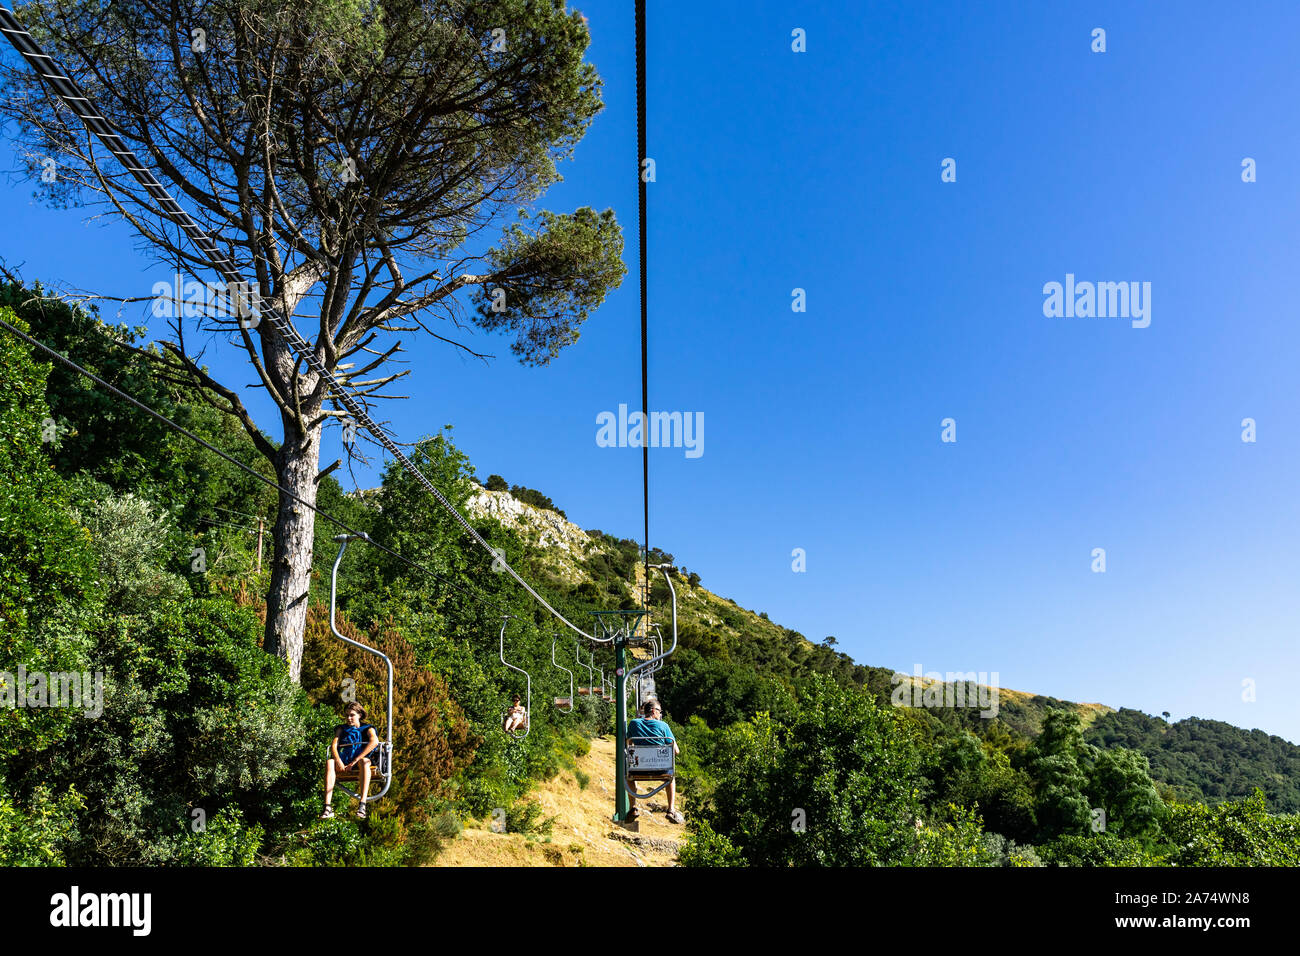 Sessellift rinding bis zum Monte Solaro, eine beliebte Touristenattraktion von Capri. Anacapri, Kampanien, Italien, Juni 2019 Stockfoto